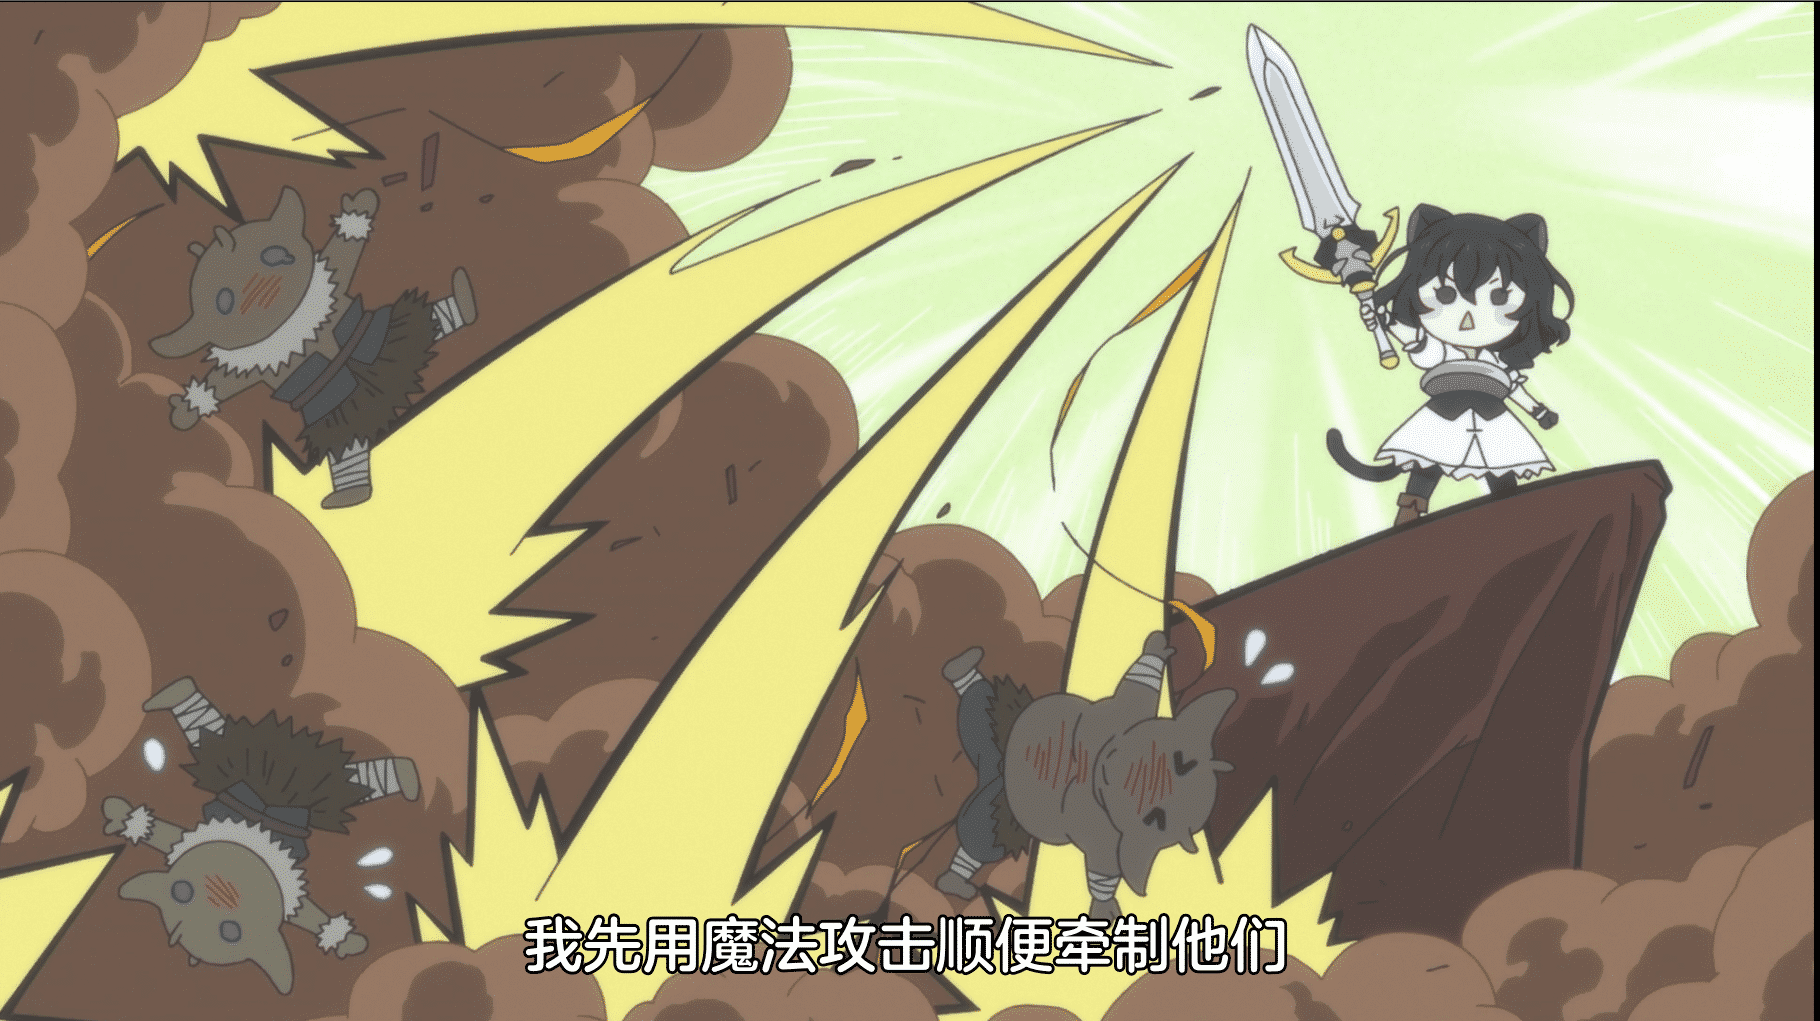 [猎户随缘压制] 转生成为魔剑 / 转生就是剑 Tensei shitara Ken deshita [05] [1080p] [简中内嵌] [2022年10月番]插图icecomic动漫-云之彼端,约定的地方(´･ᴗ･`)2